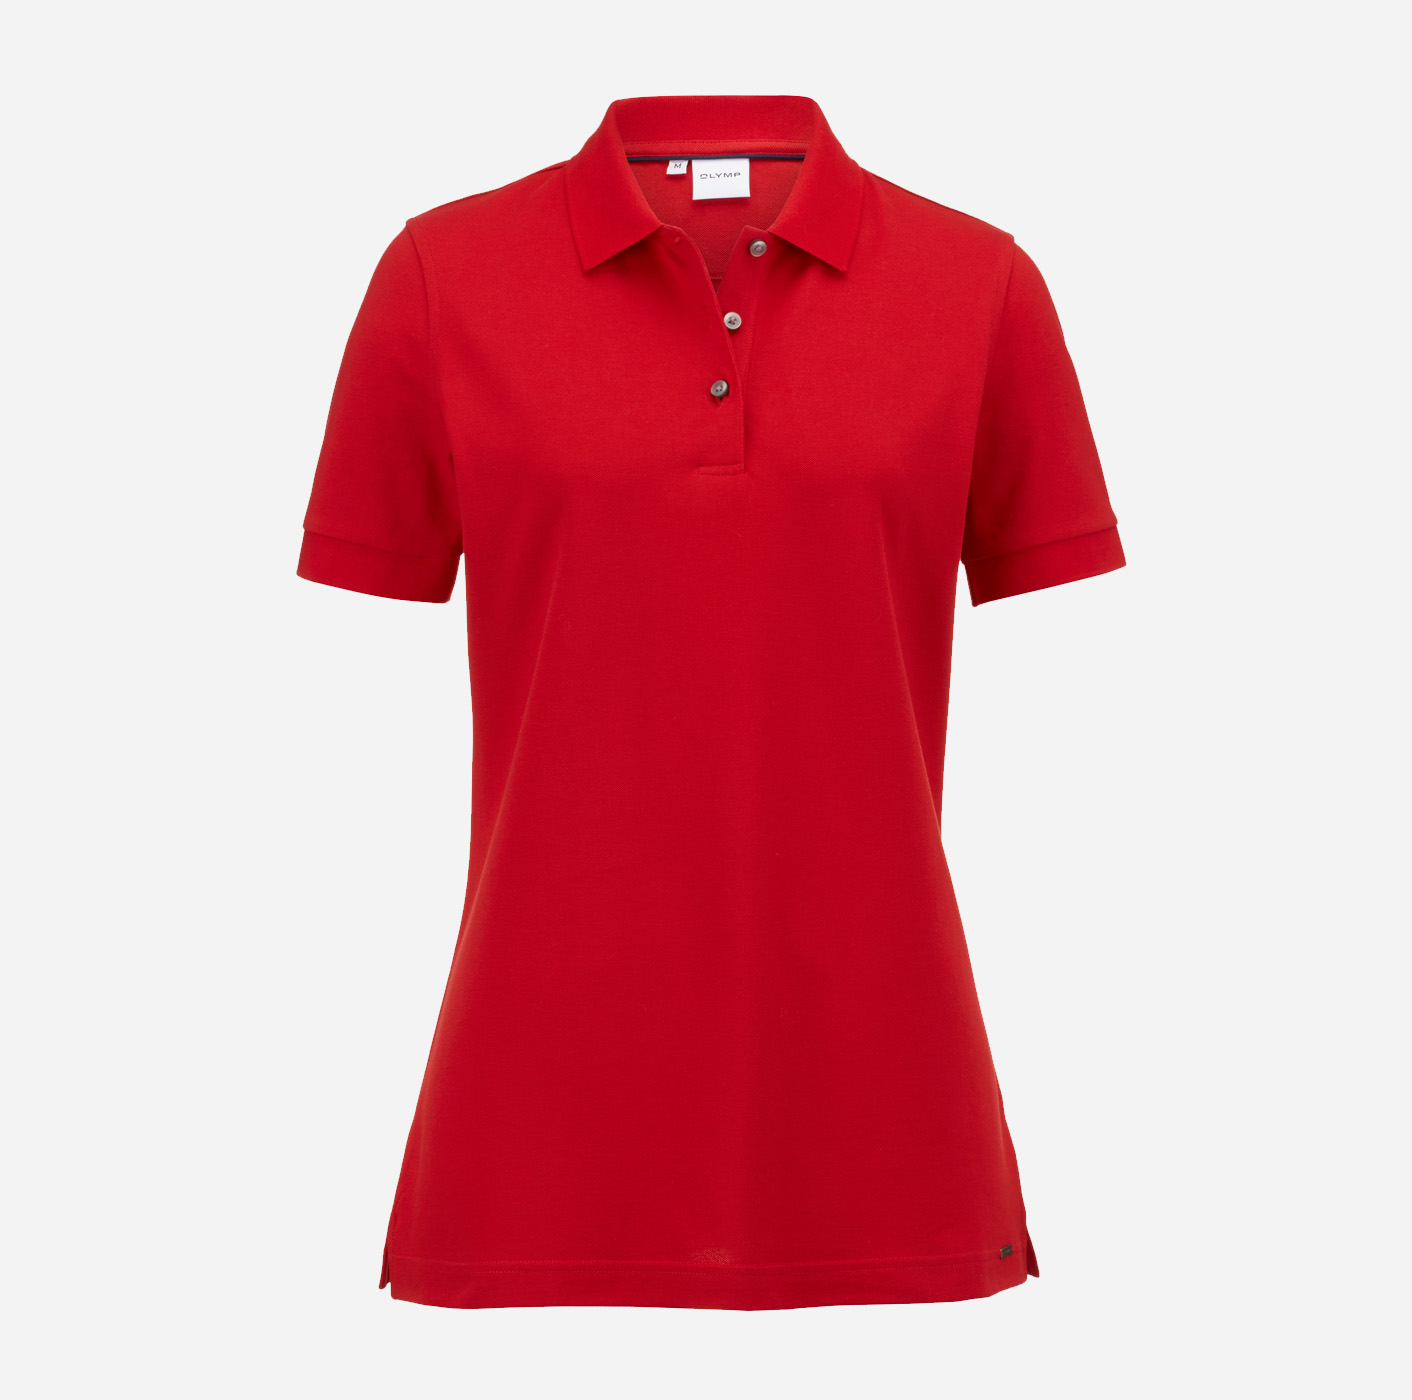 Rote OLYMP Damen-Poloshirts mit Firmenlogo bestickt